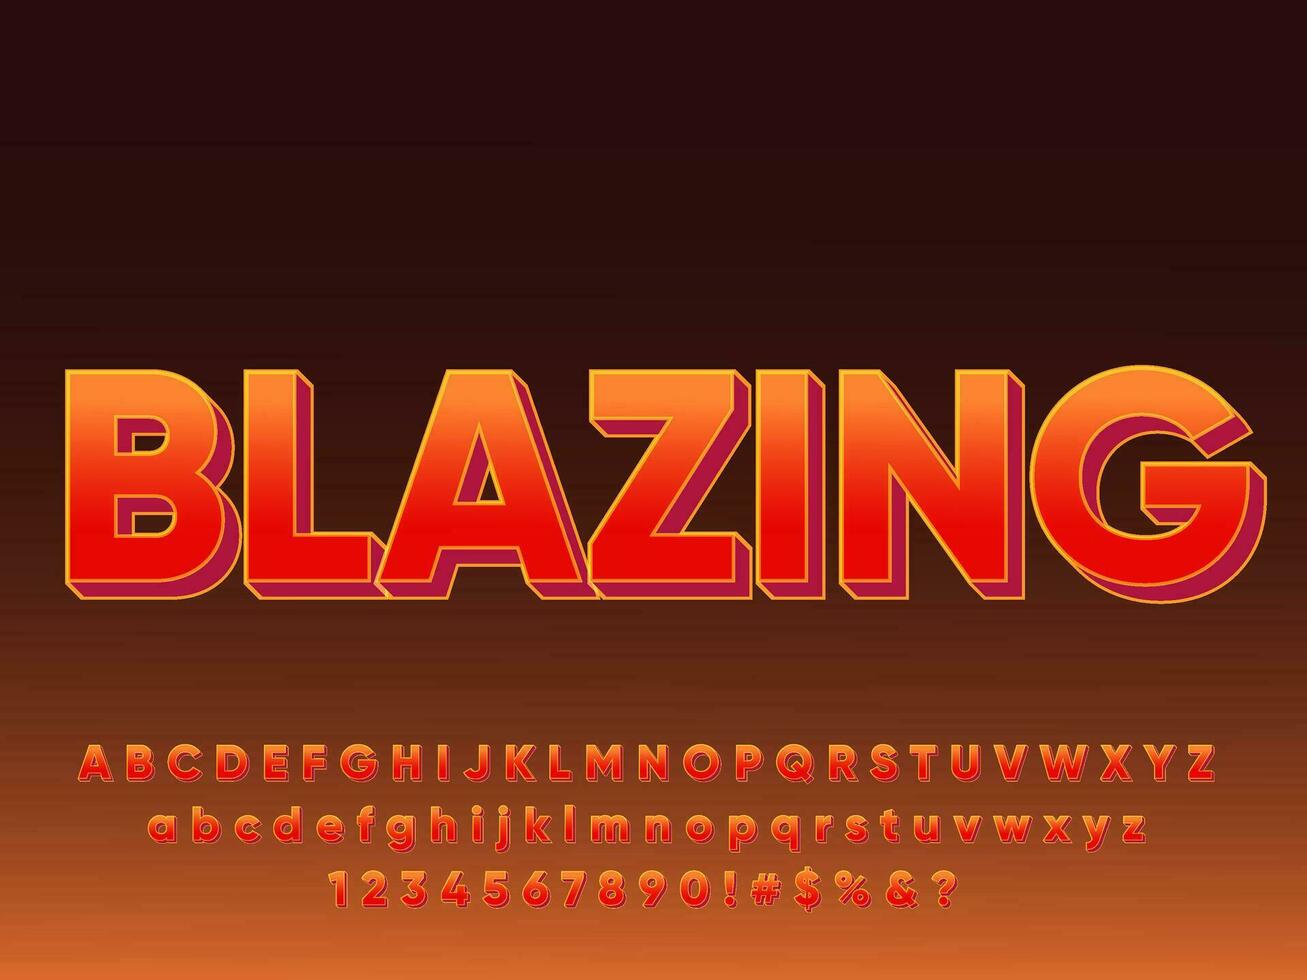 3D Blazing in Fire Modern Text Effect vector